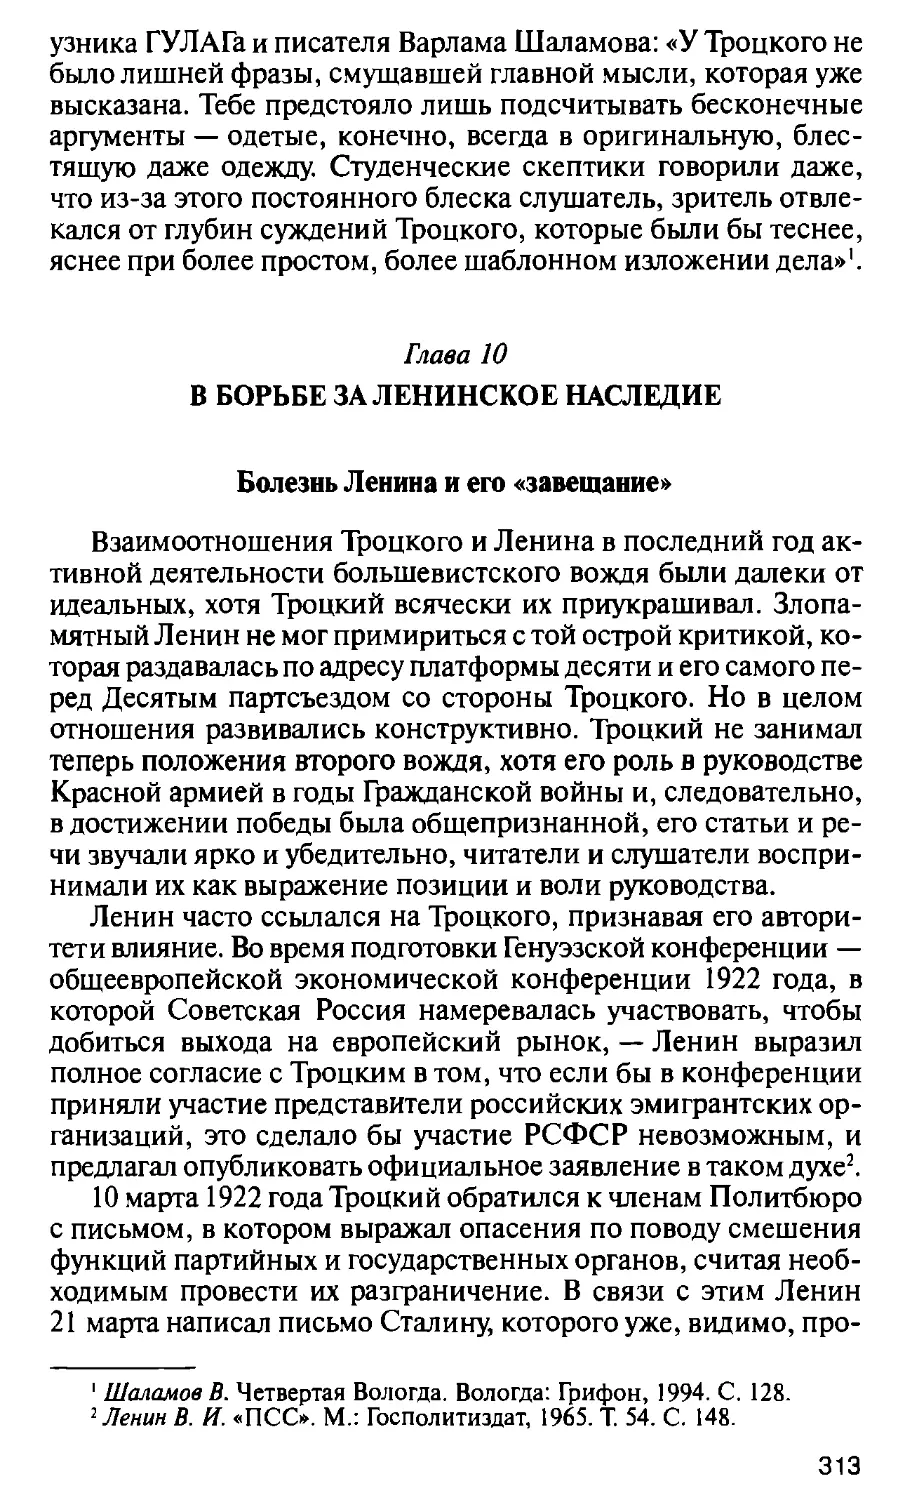 Глава 10. В борьбе за ленинское наследие